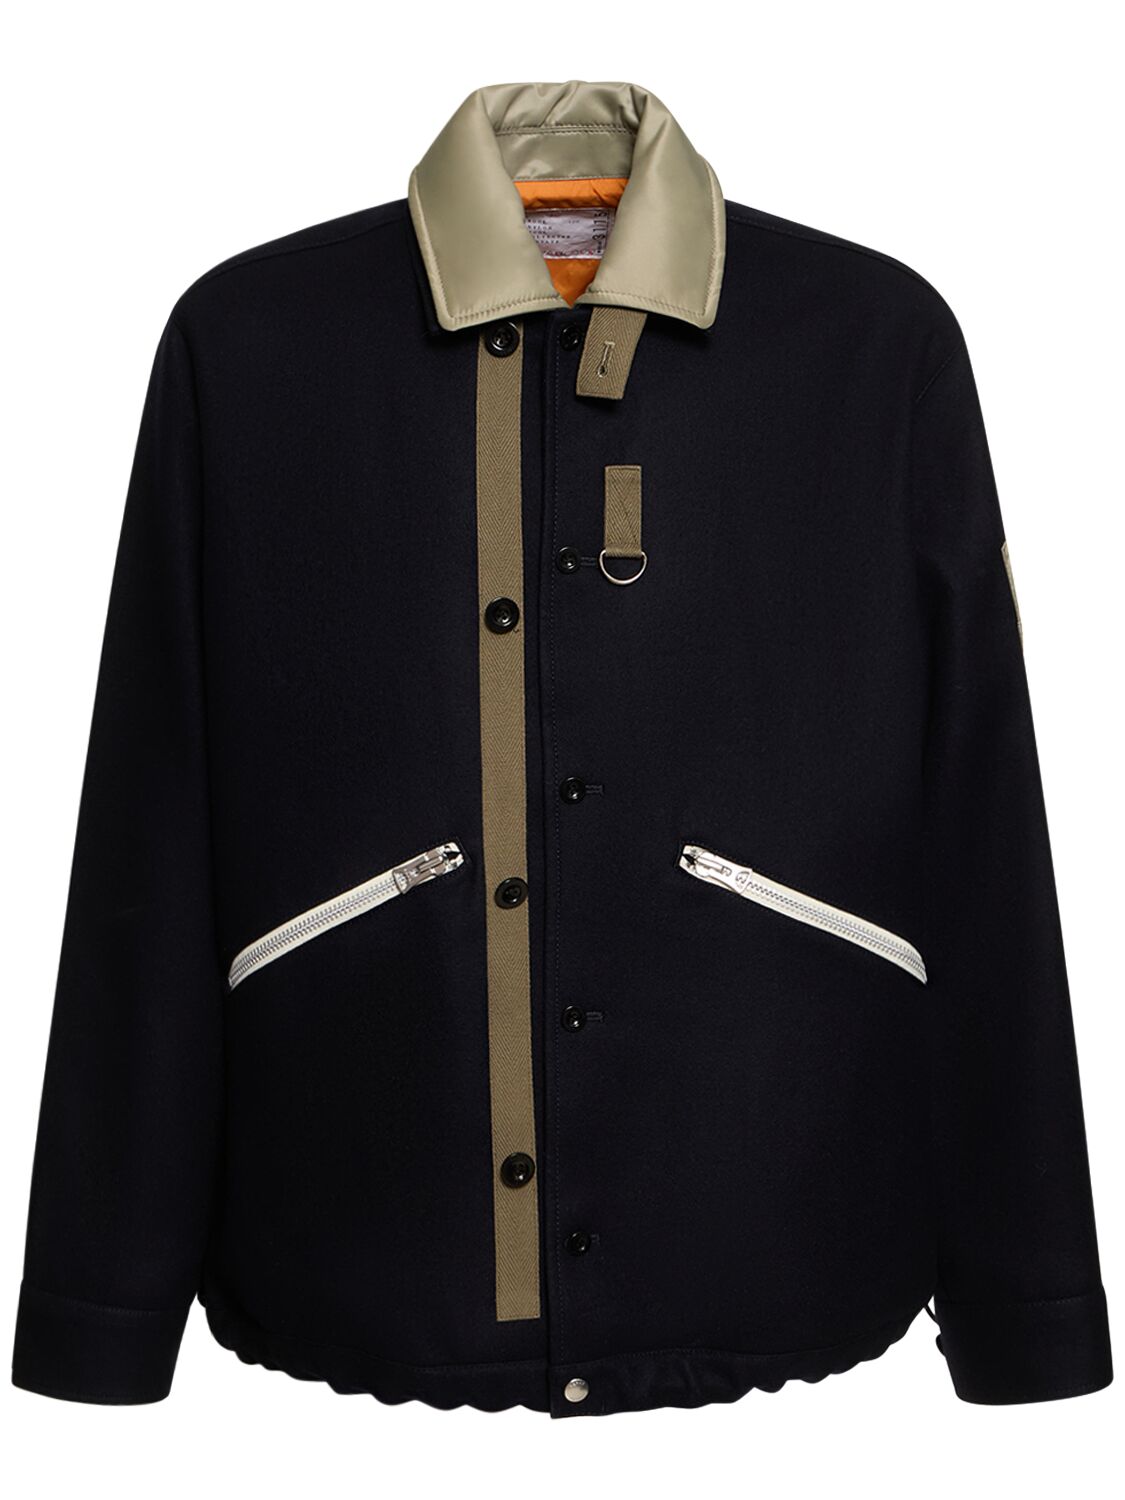 Wool Melton Jacket – MEN > CLOTHING > JACKETS